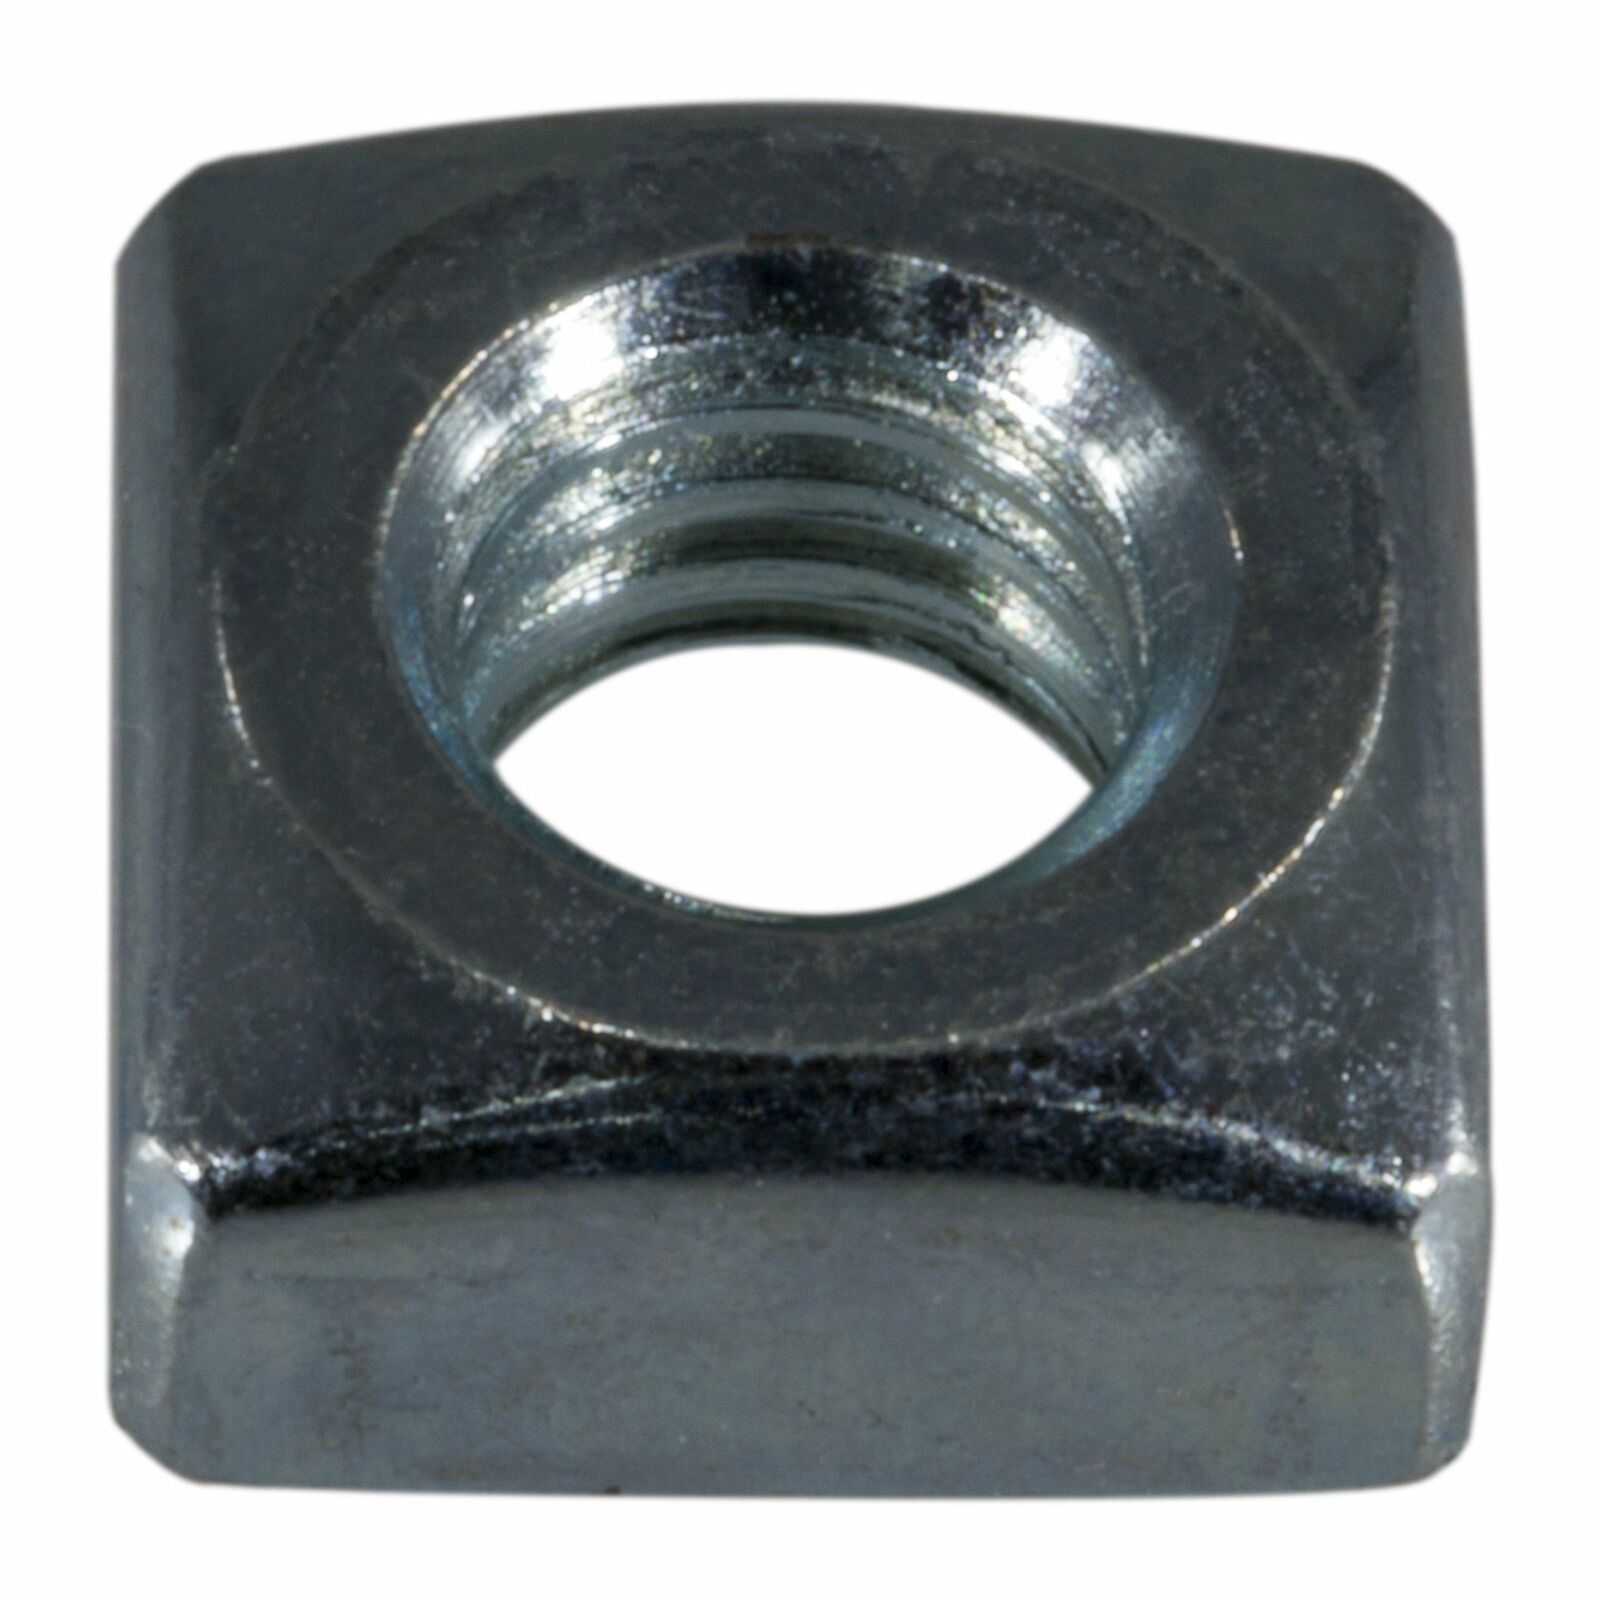 5/16"-18 Zinc Plated Steel Coarse Thread Square Nuts Sqrnt-047 (20 Pcs.)